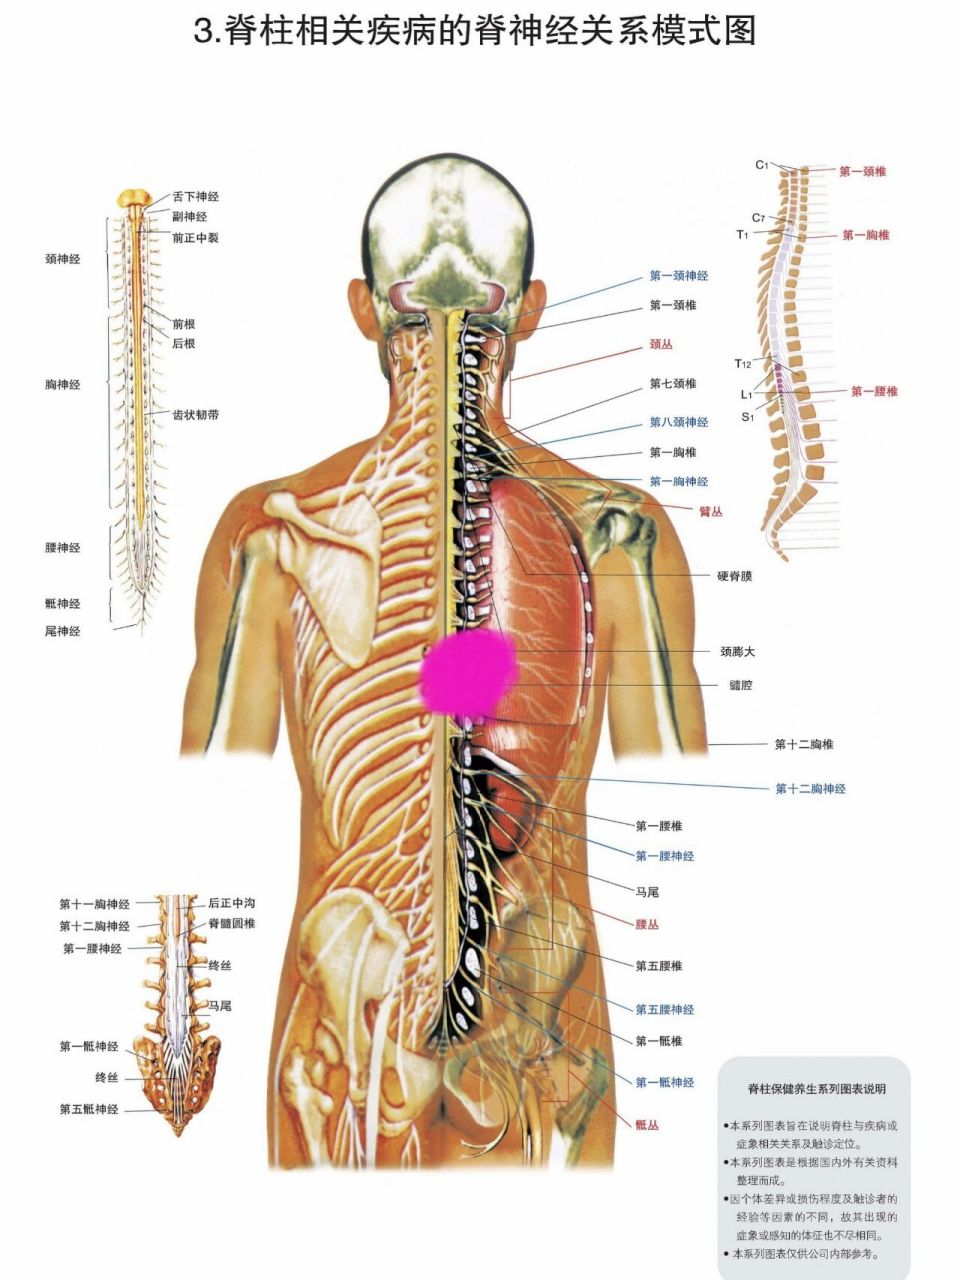 后背上部脊柱中间疼痛图片